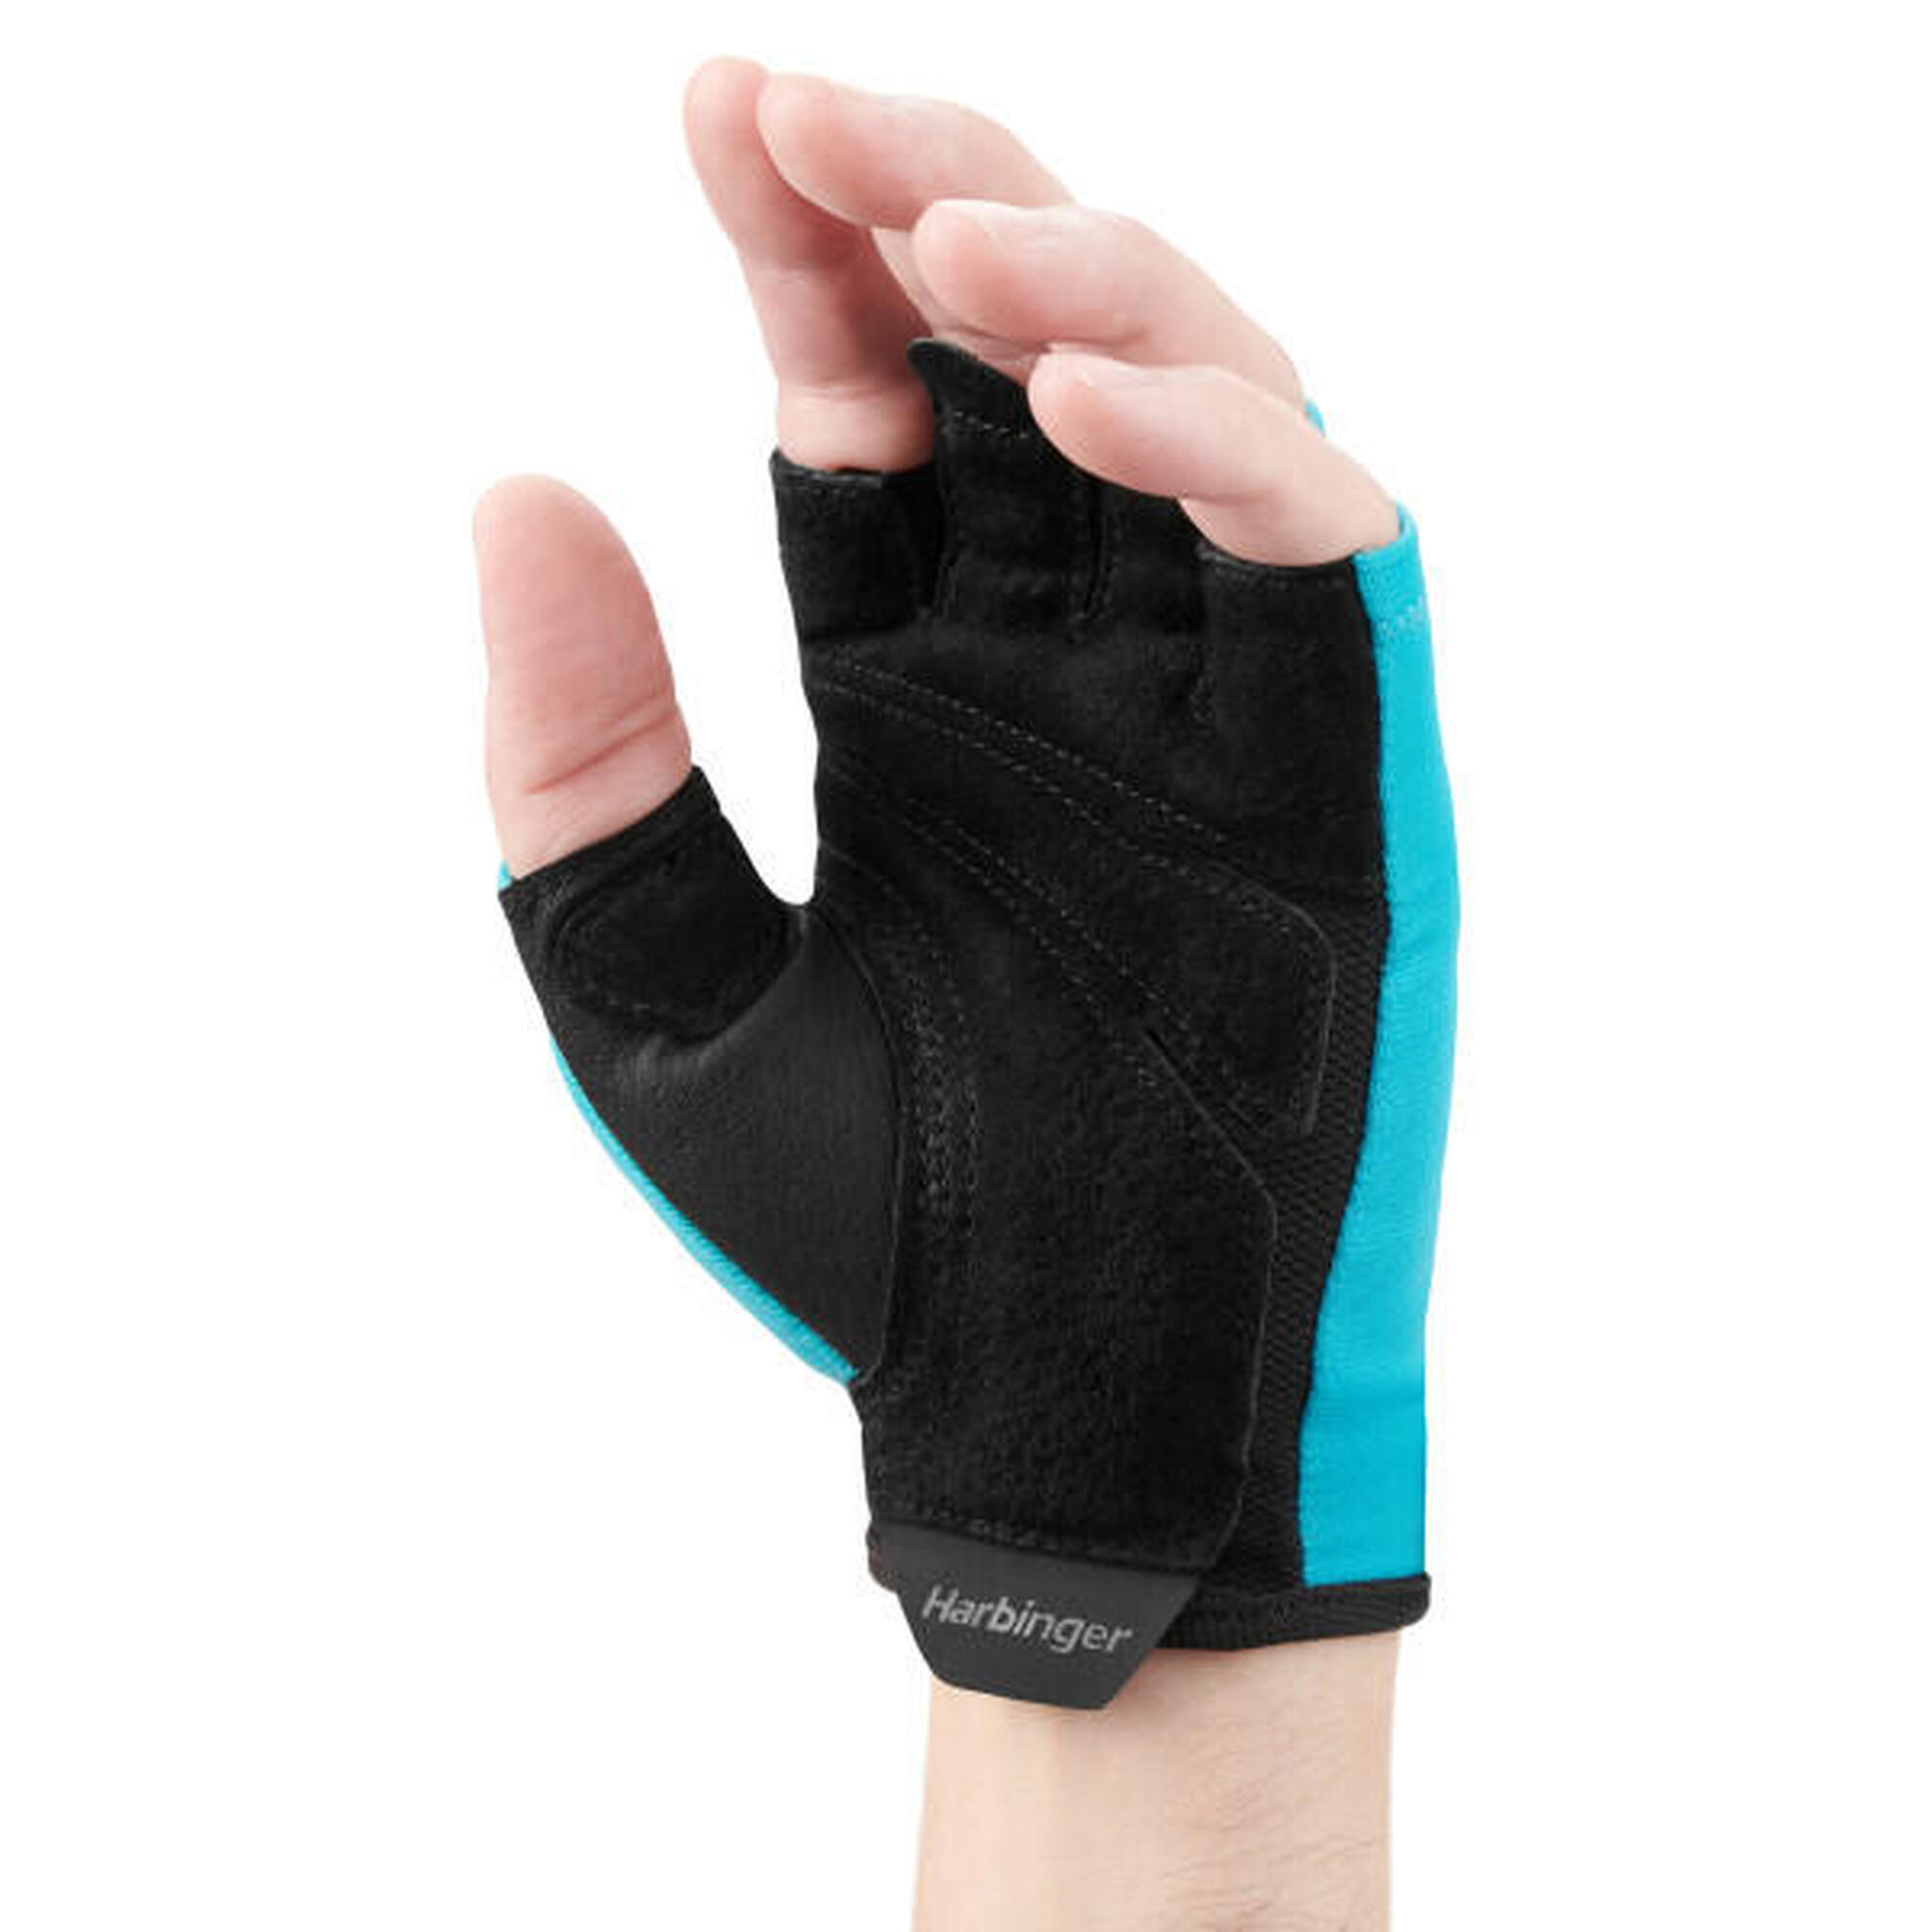 Unisex blauwe gewichthefhandschoen voor trainingscomfort maat XS